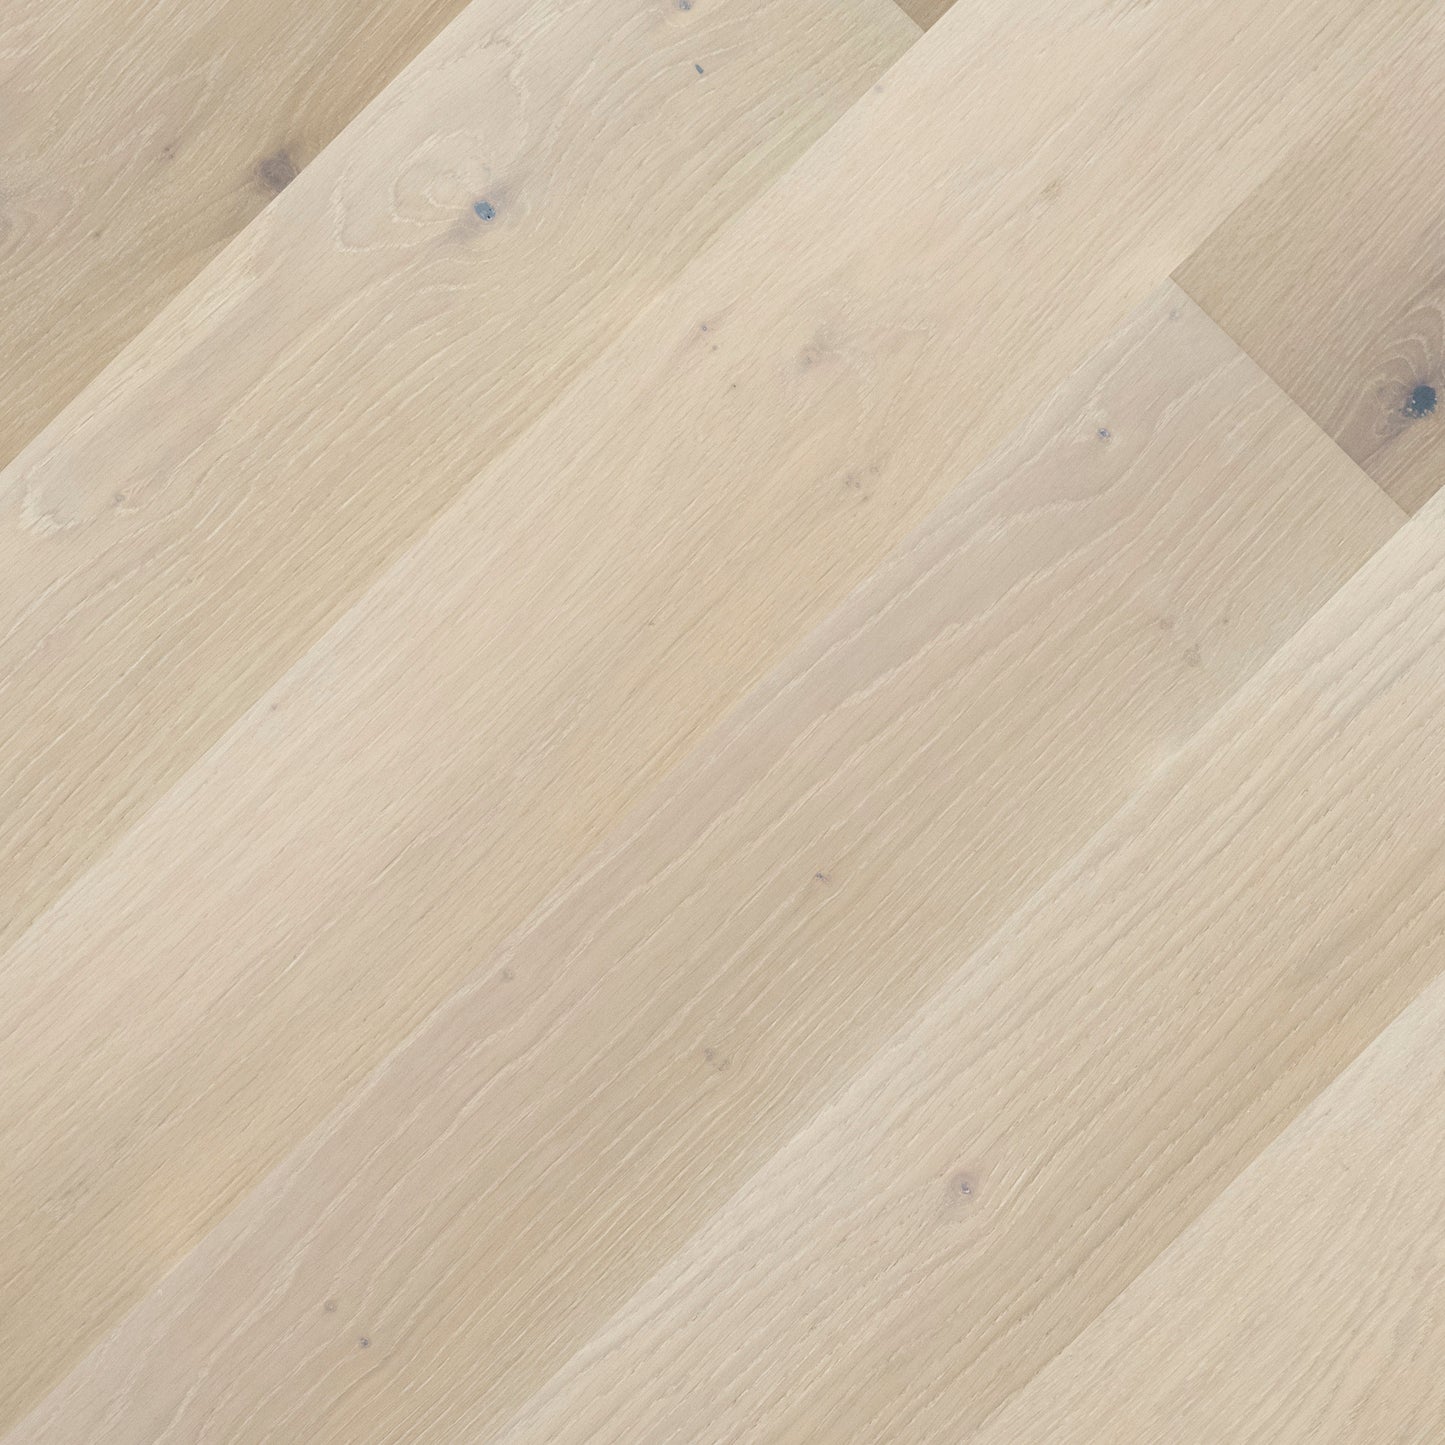 Reliable Waterproof Engineered Hardwood Flooring